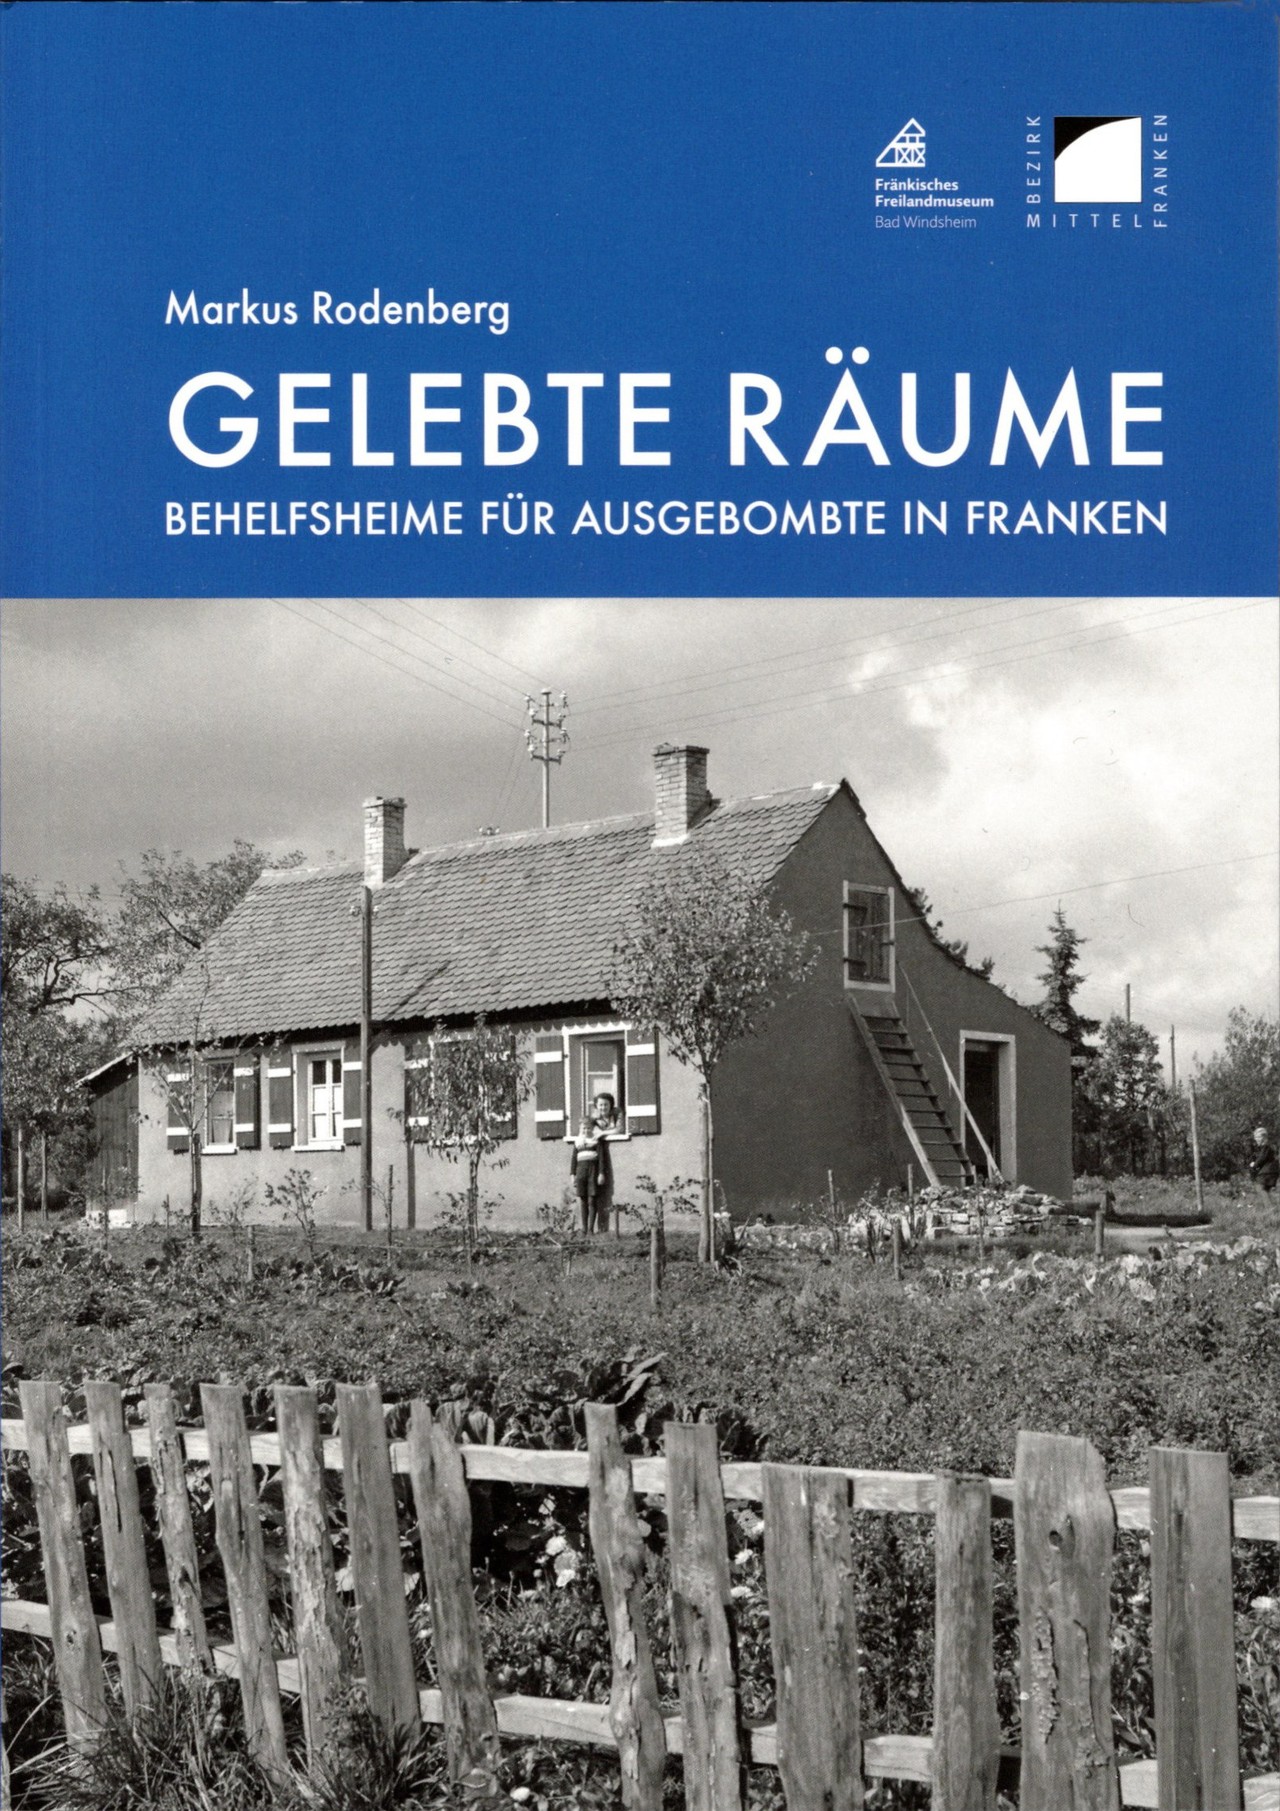 Die Dissertation von Markus Rodenberg beleuchtet umfassend das Bauphänomen Behelfsheim.